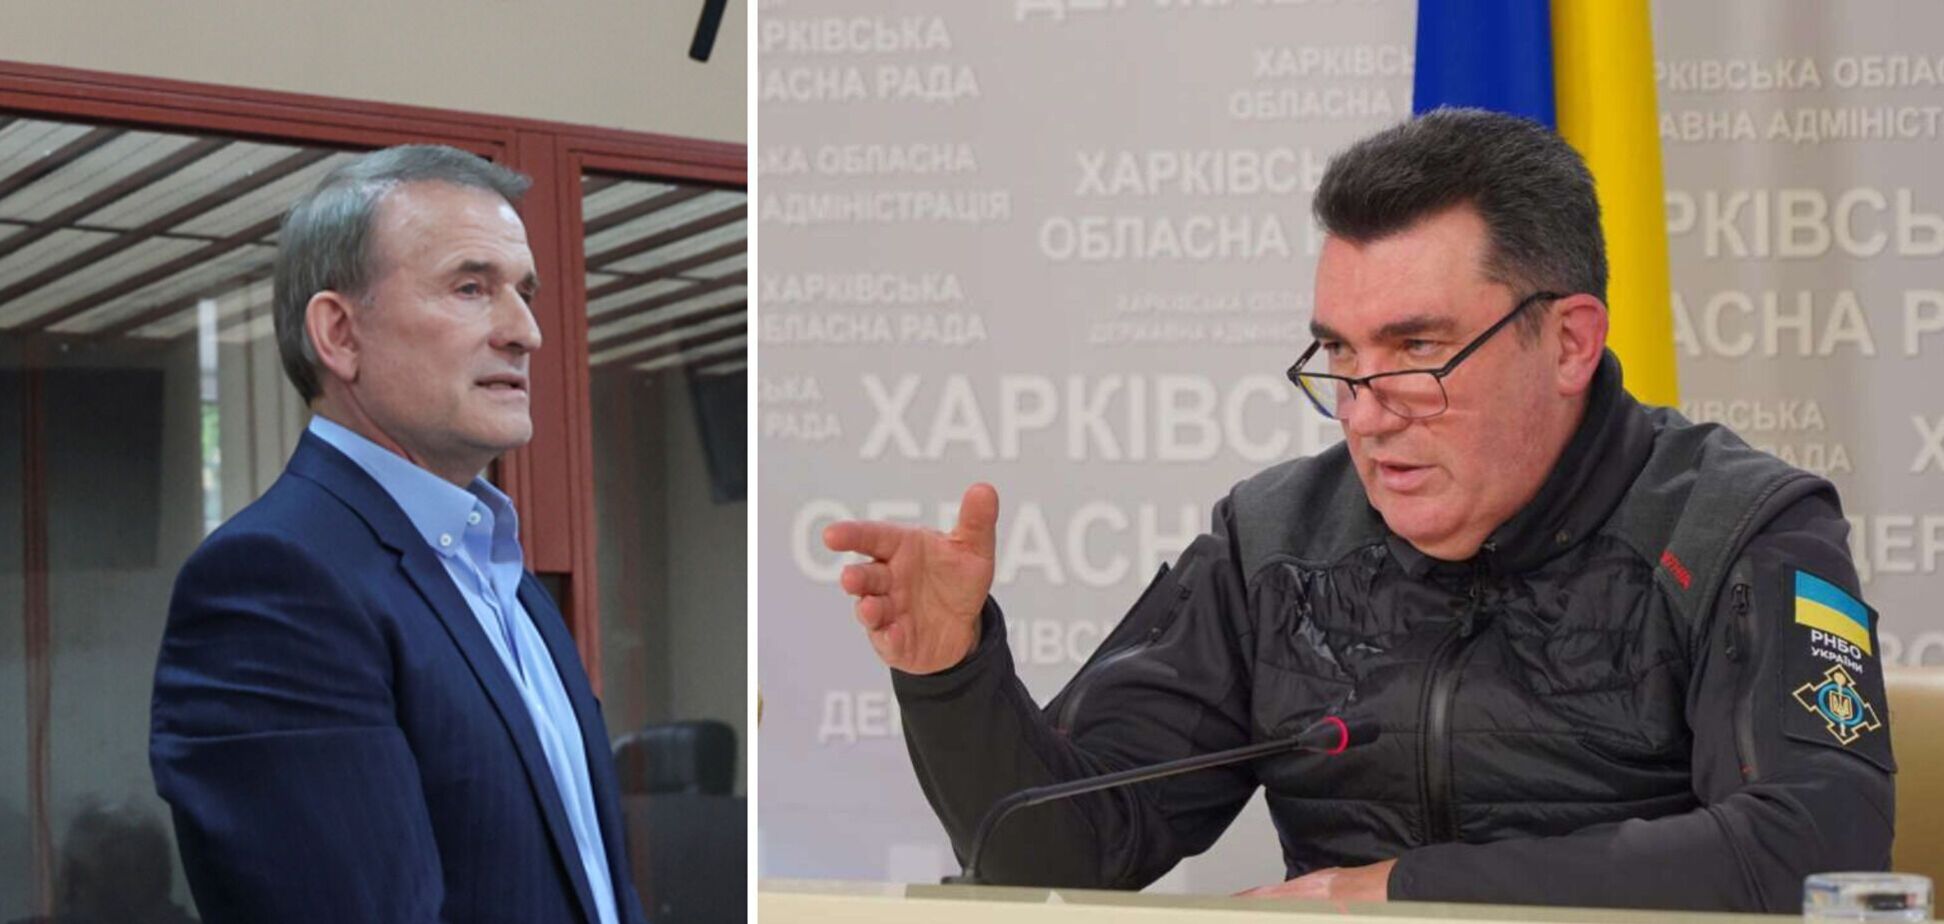 Данилов призвал упростить процедуру наказания коллаборантов и пообещал 'отдельный разговор' с членами ОПЗЖ